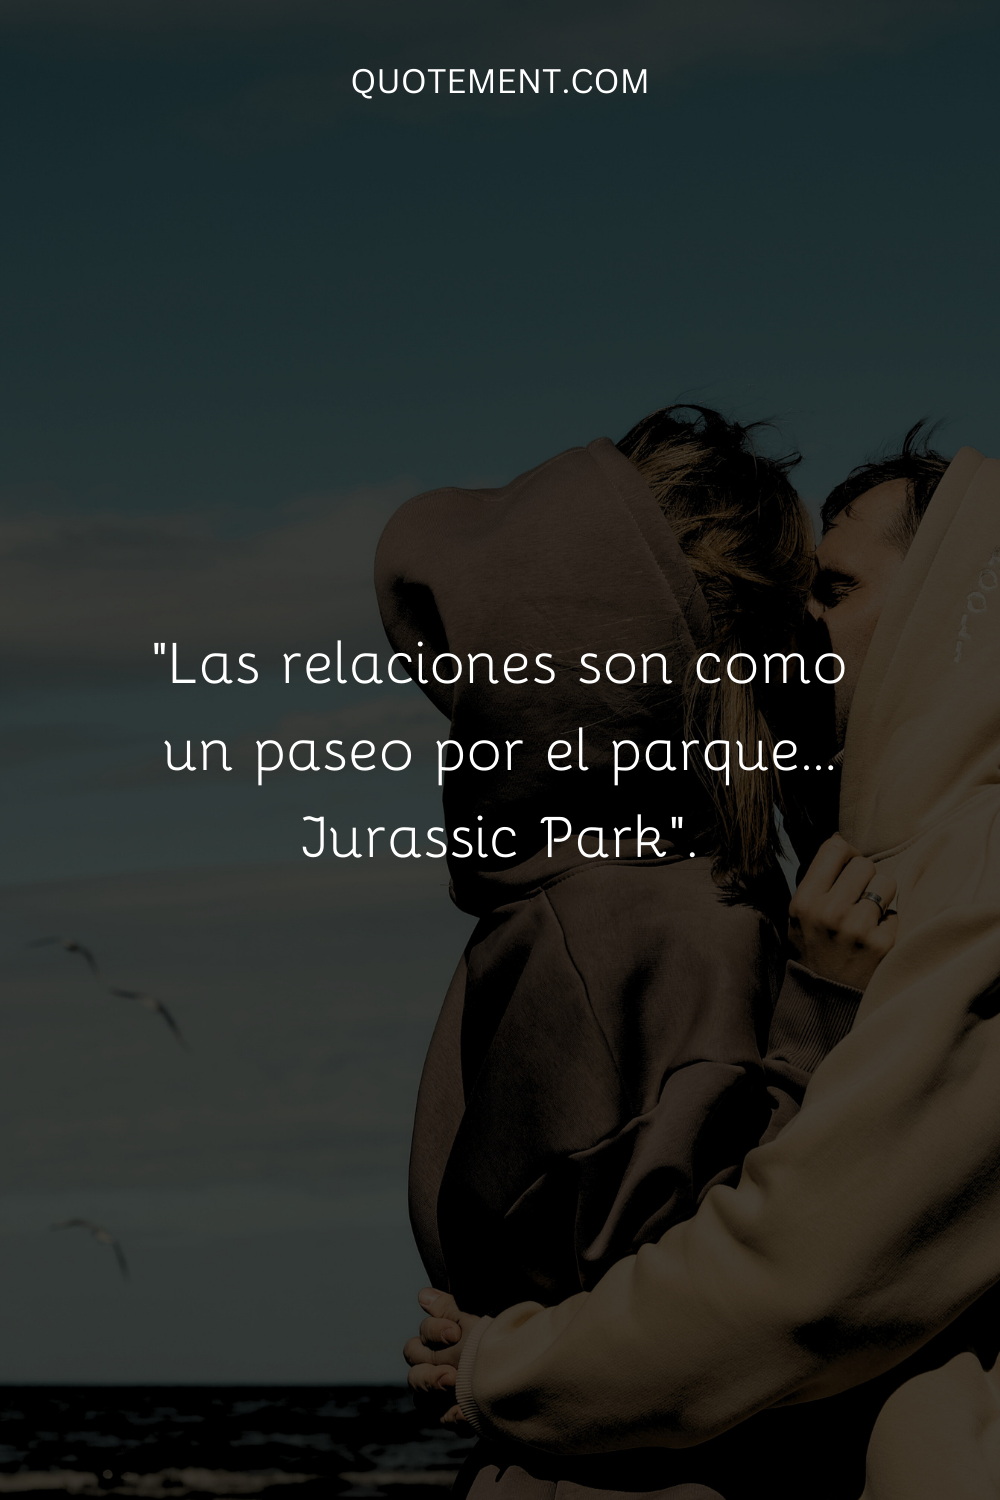 "Las relaciones son como un paseo por el parque... Jurassic Park".